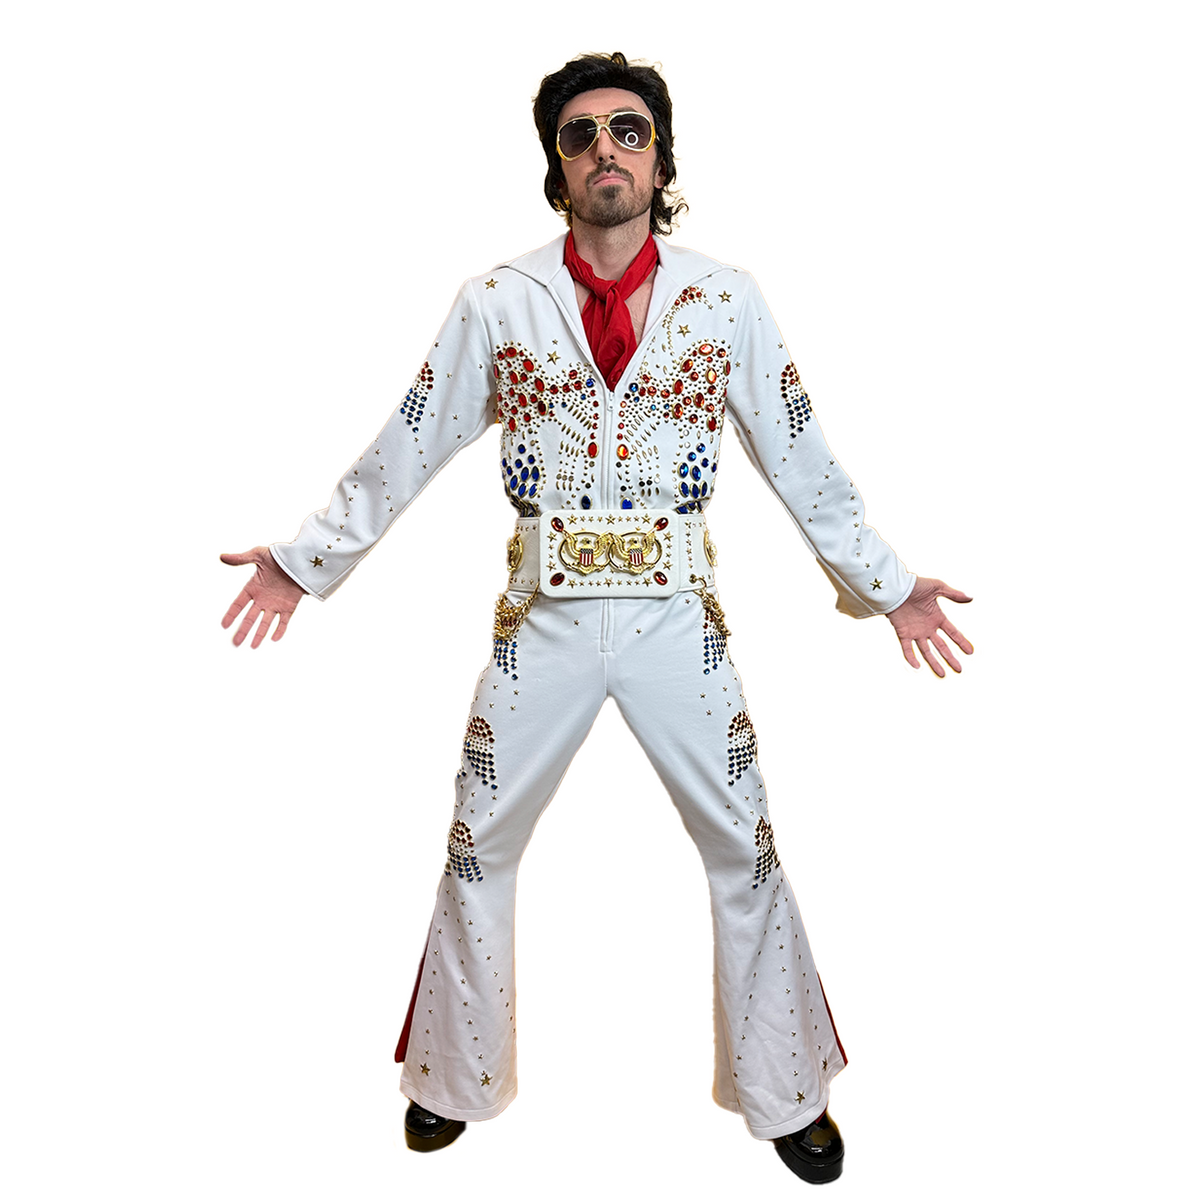 Authentic Professional Elvis Adult Costume w/ Rhinestones & Belt